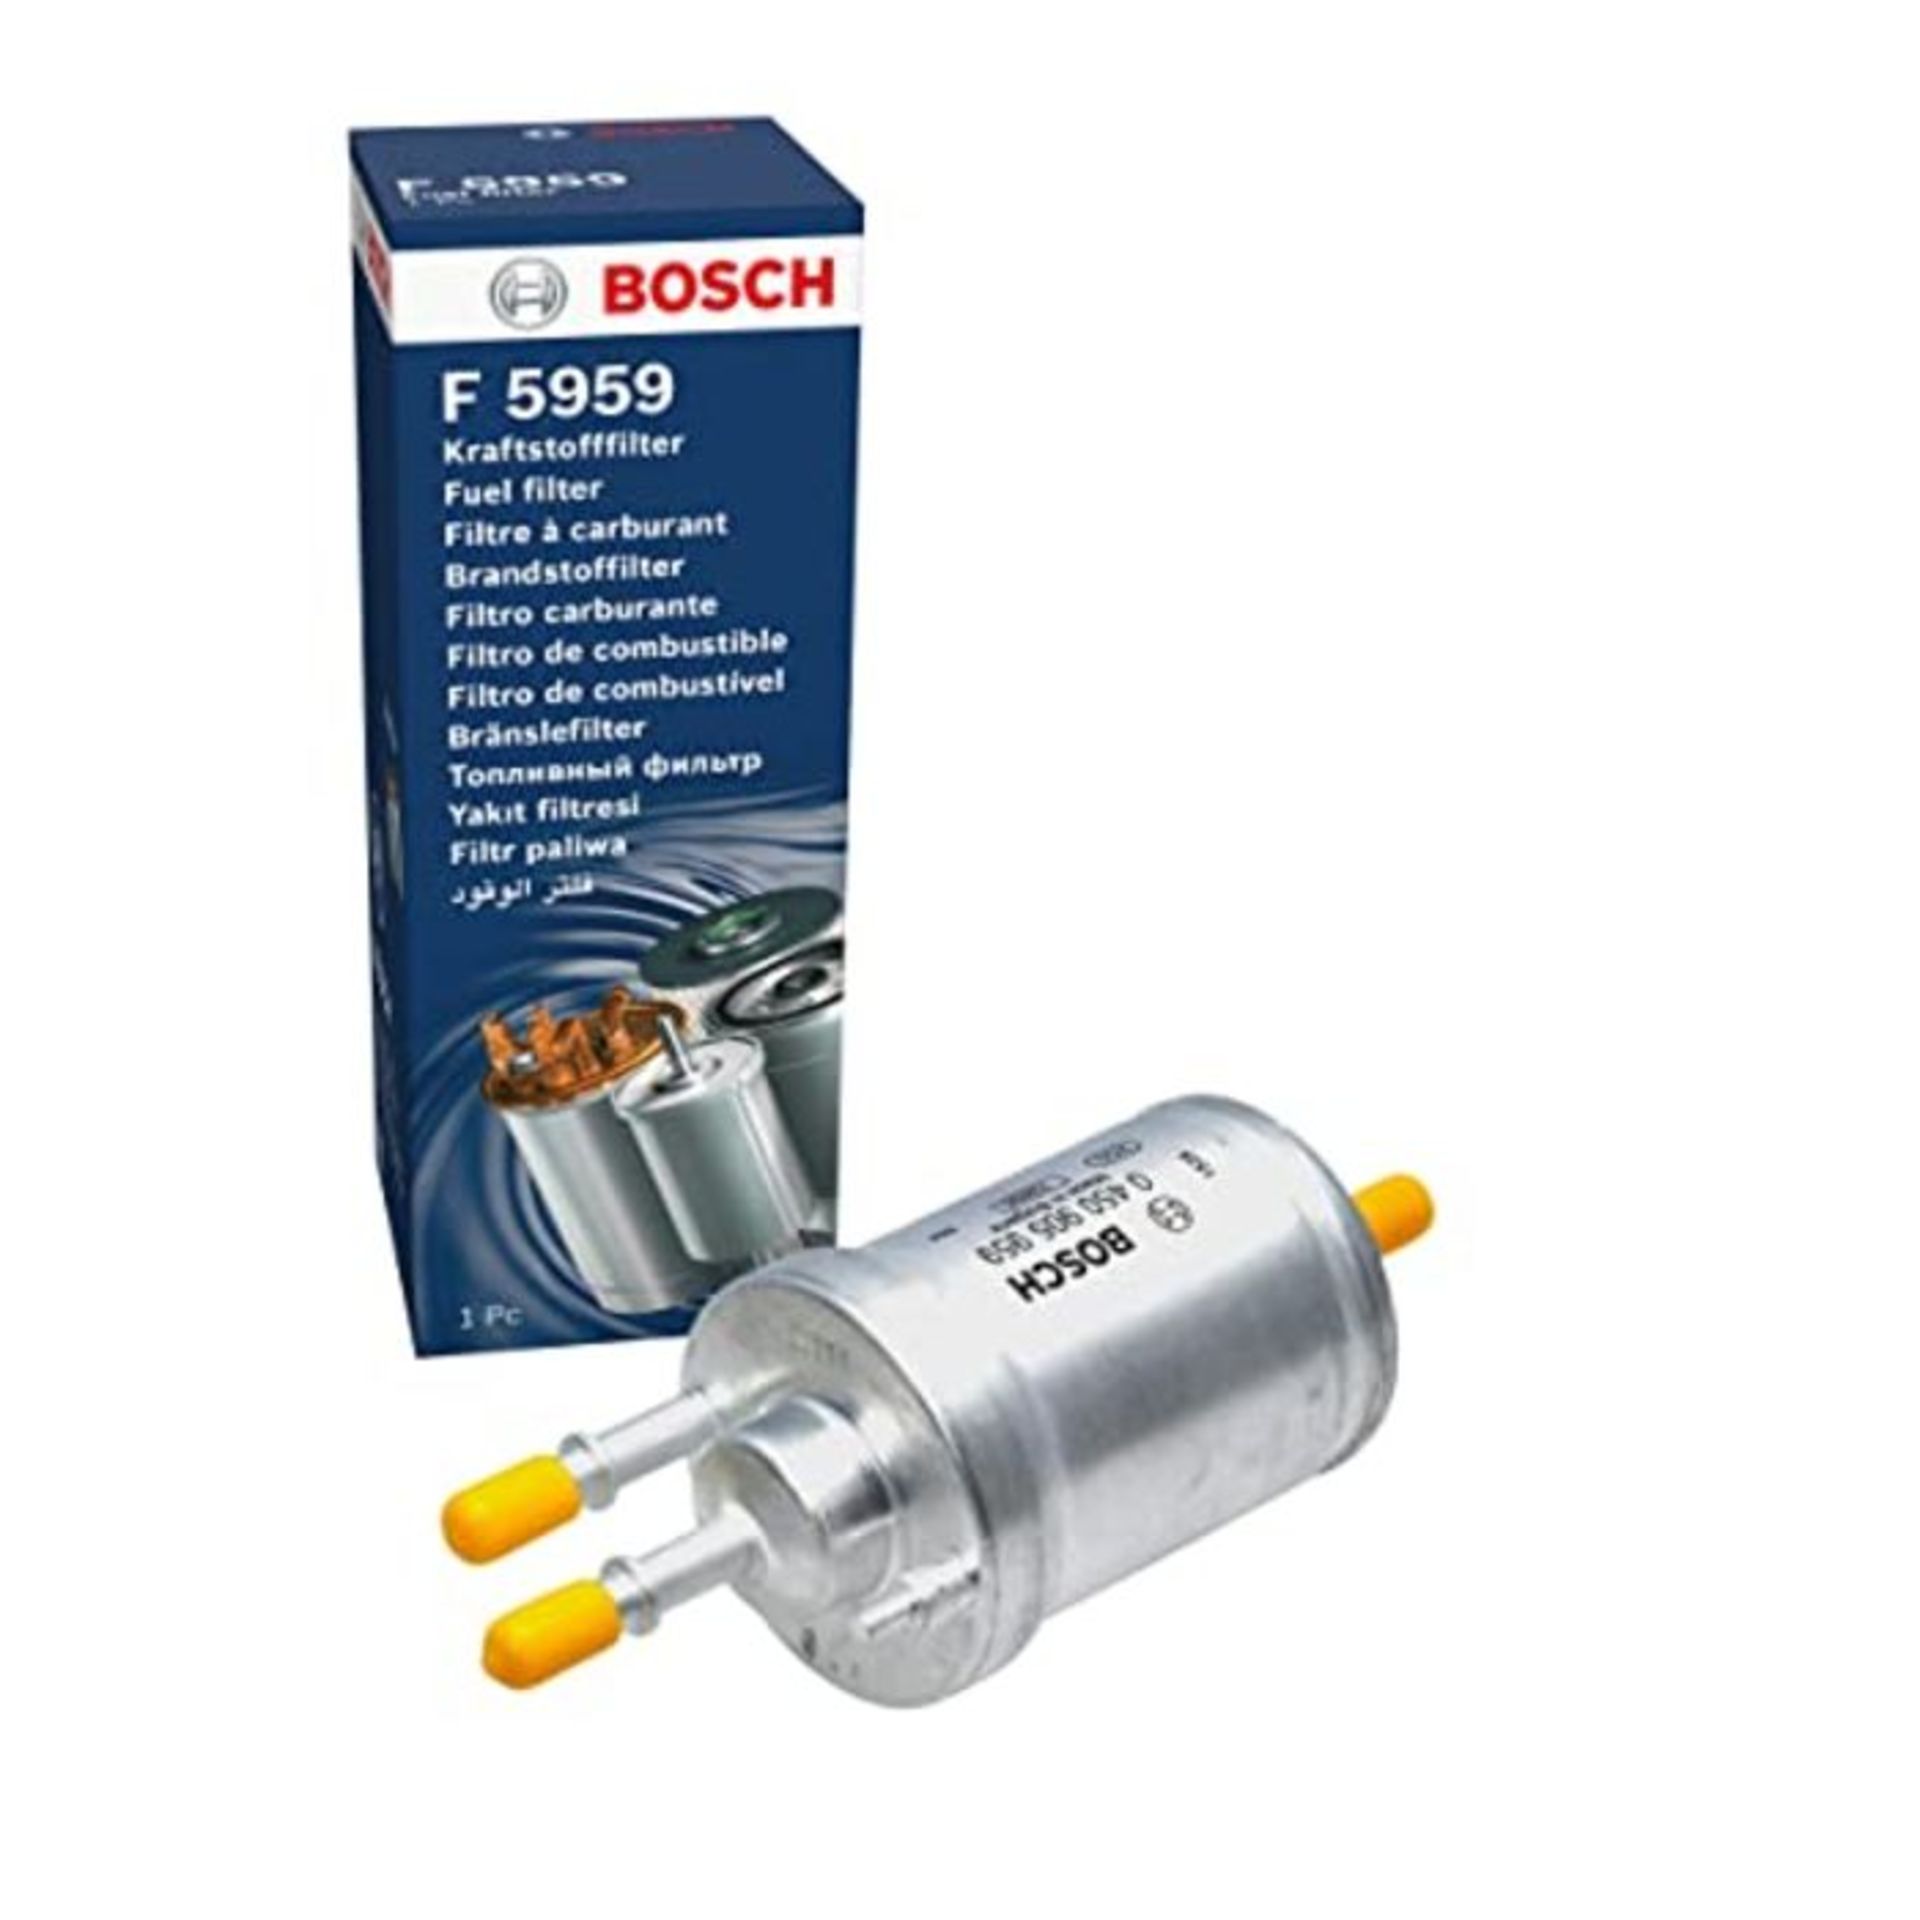 Bosch F5959 - Gasoline Filter Car